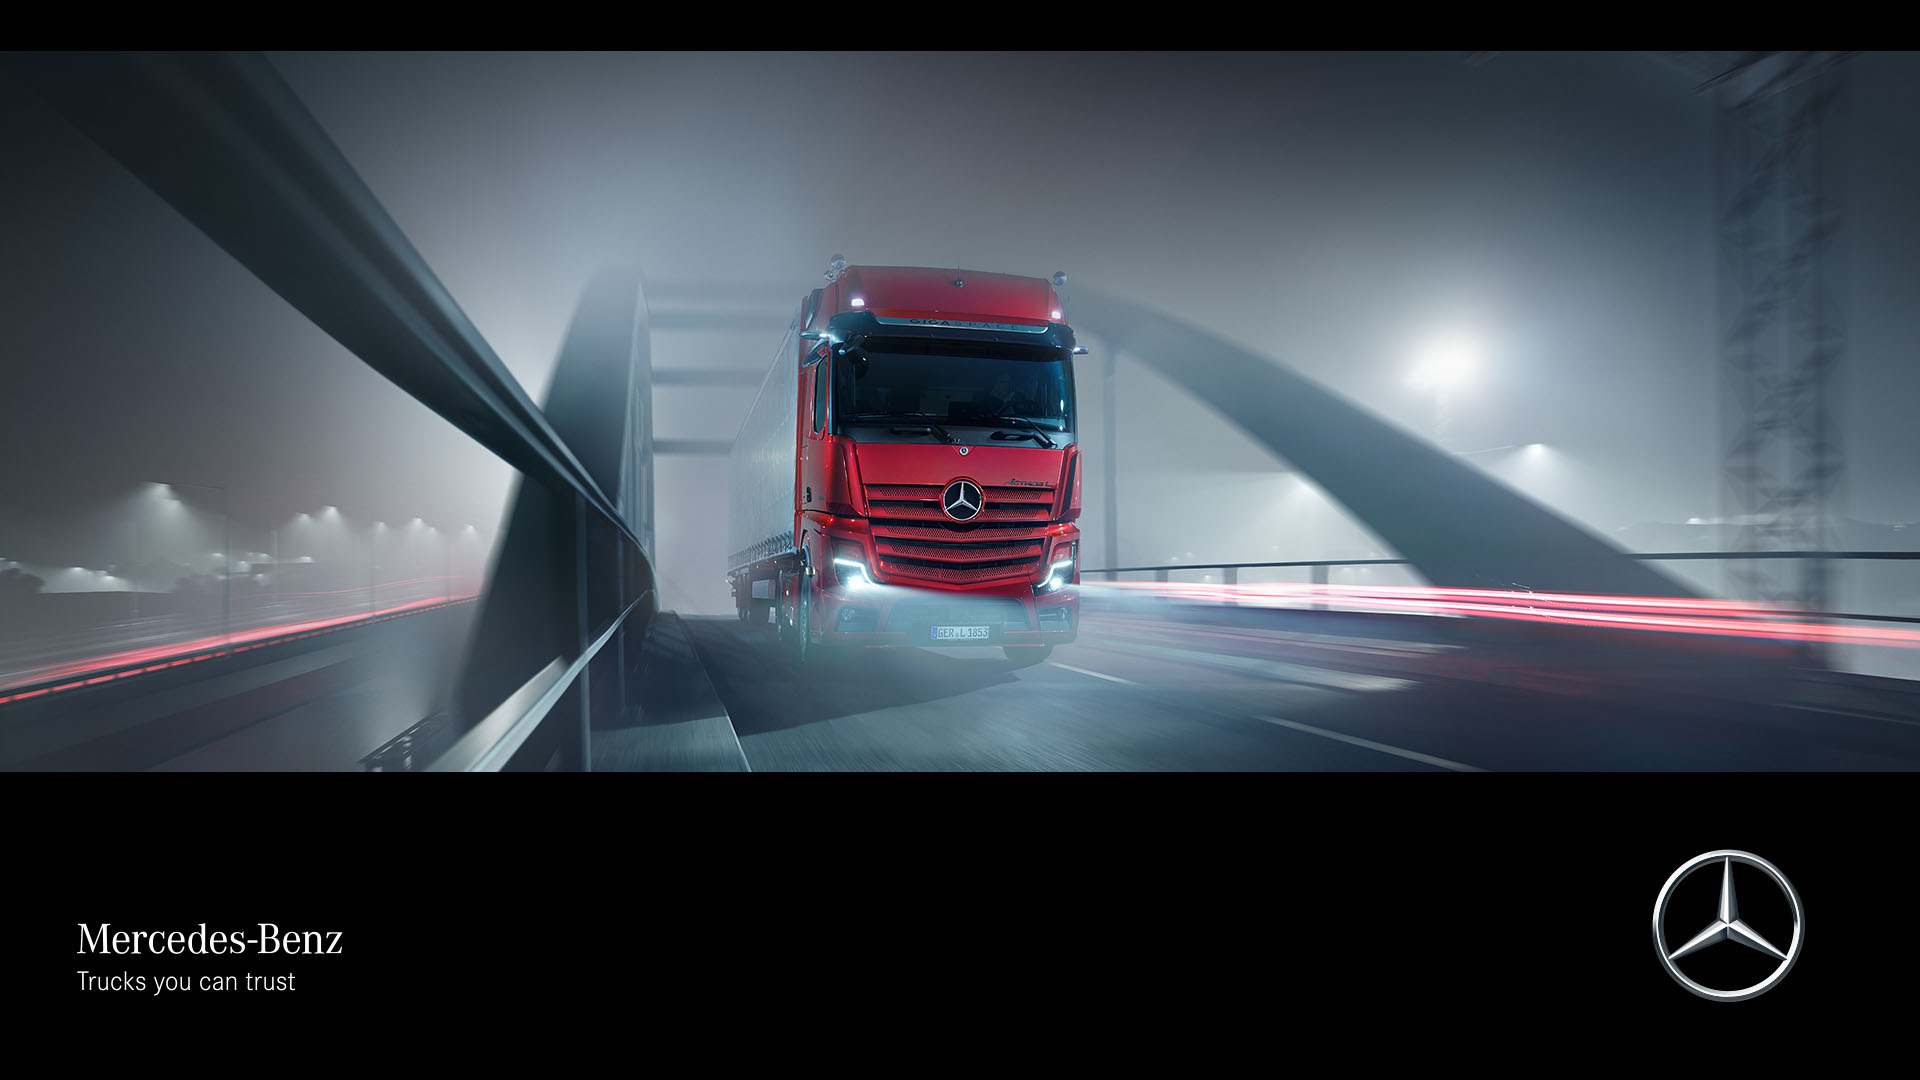 Actros L: Multimedia - Mercedes-Benz Trucks - Trucks you can trust